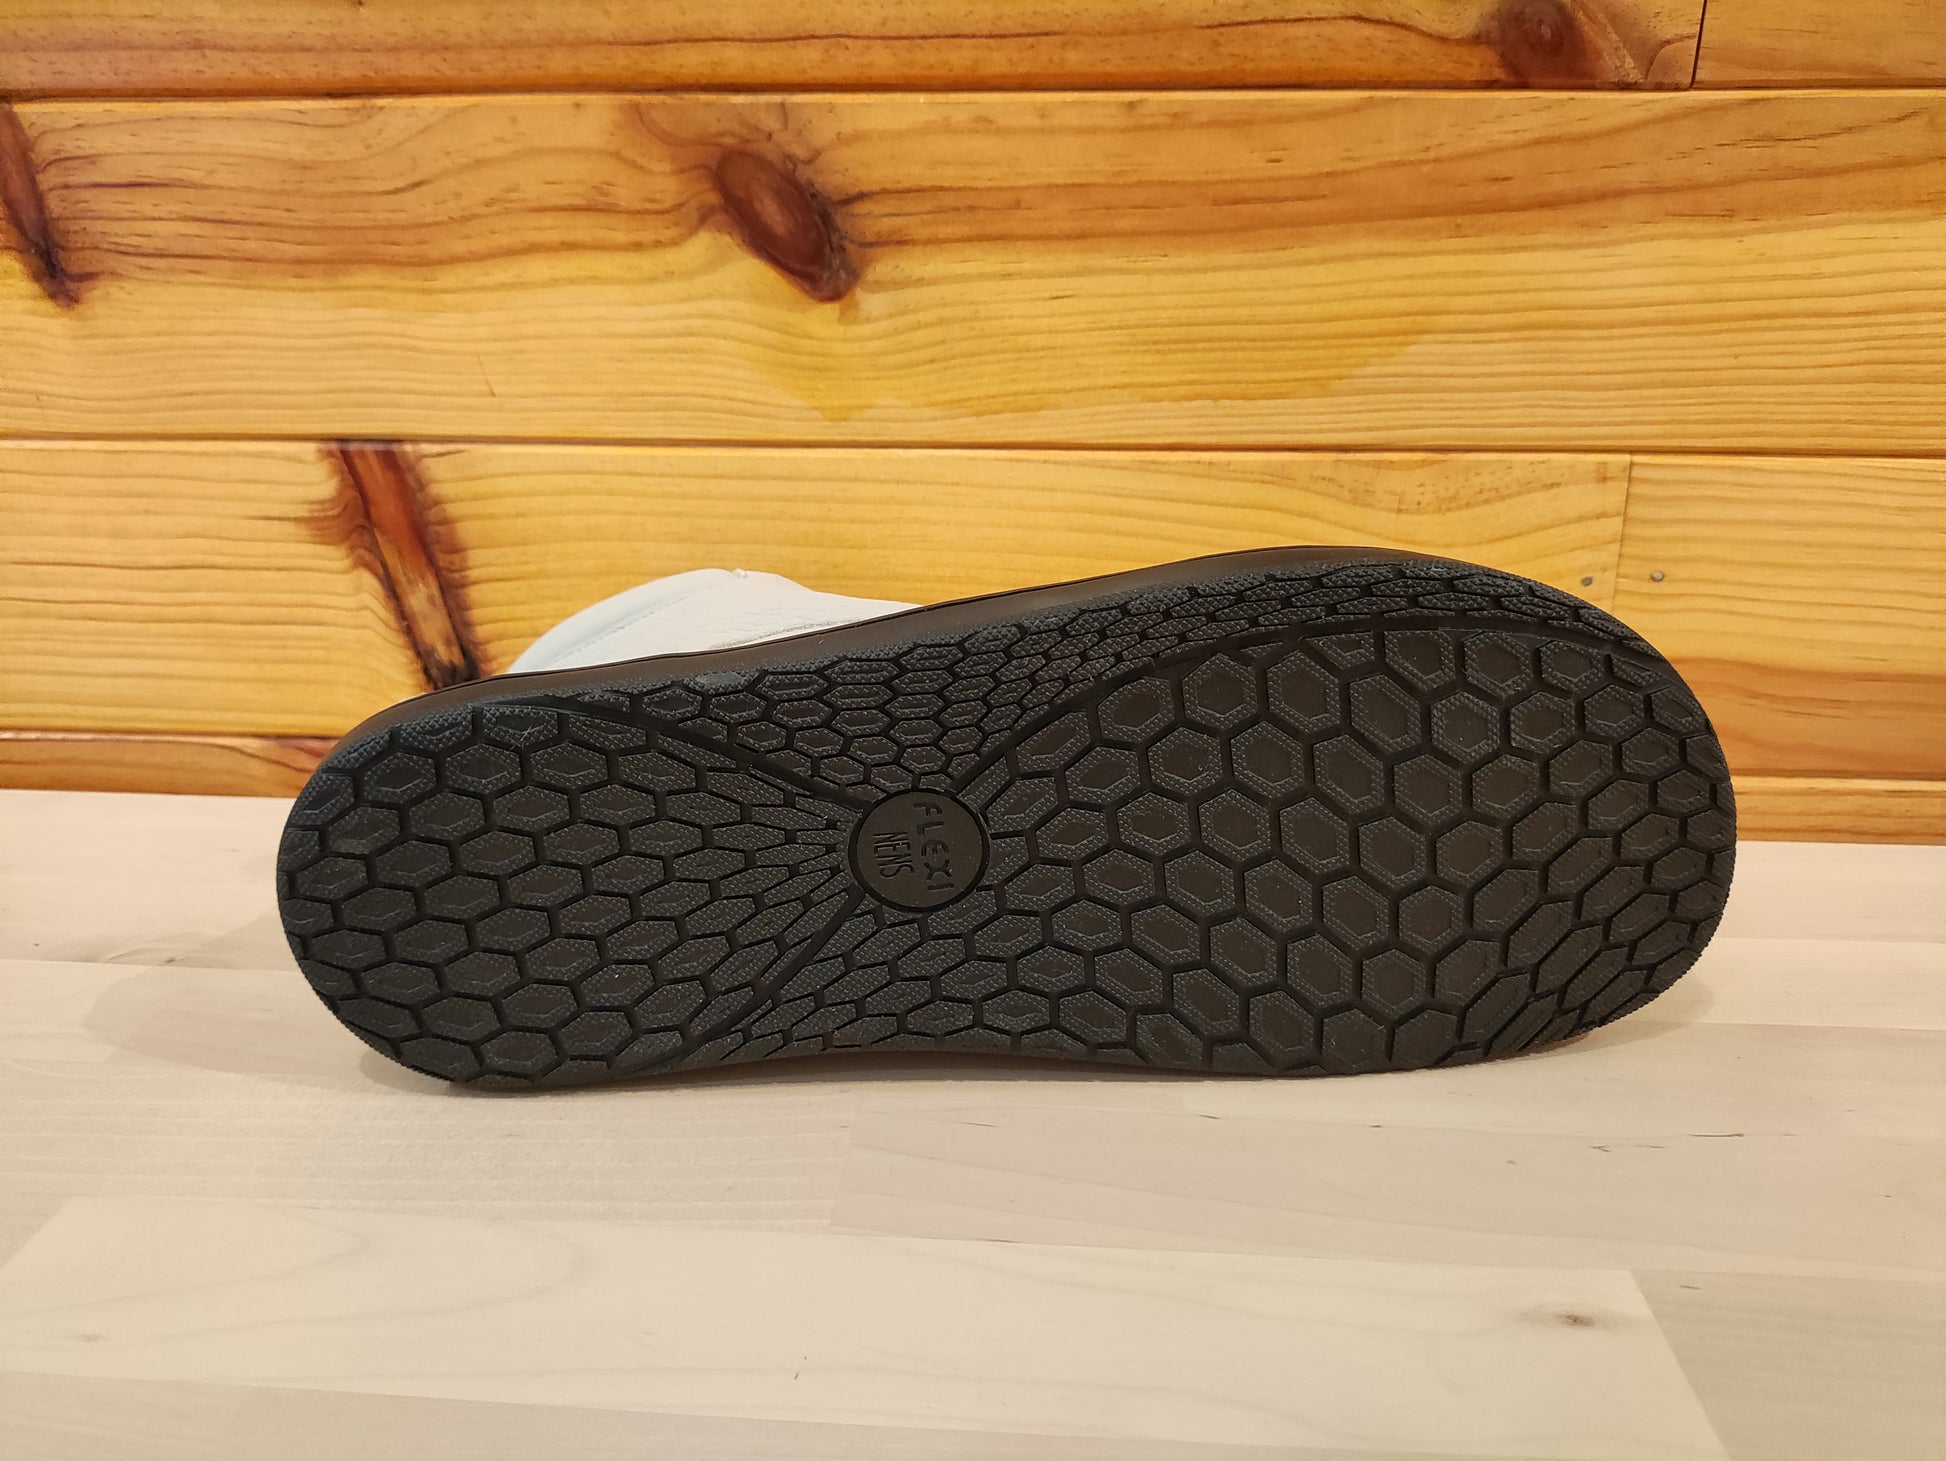 Las botas 'barefoot' de Saguaro para ir “descalzo” en invierno - Showroom